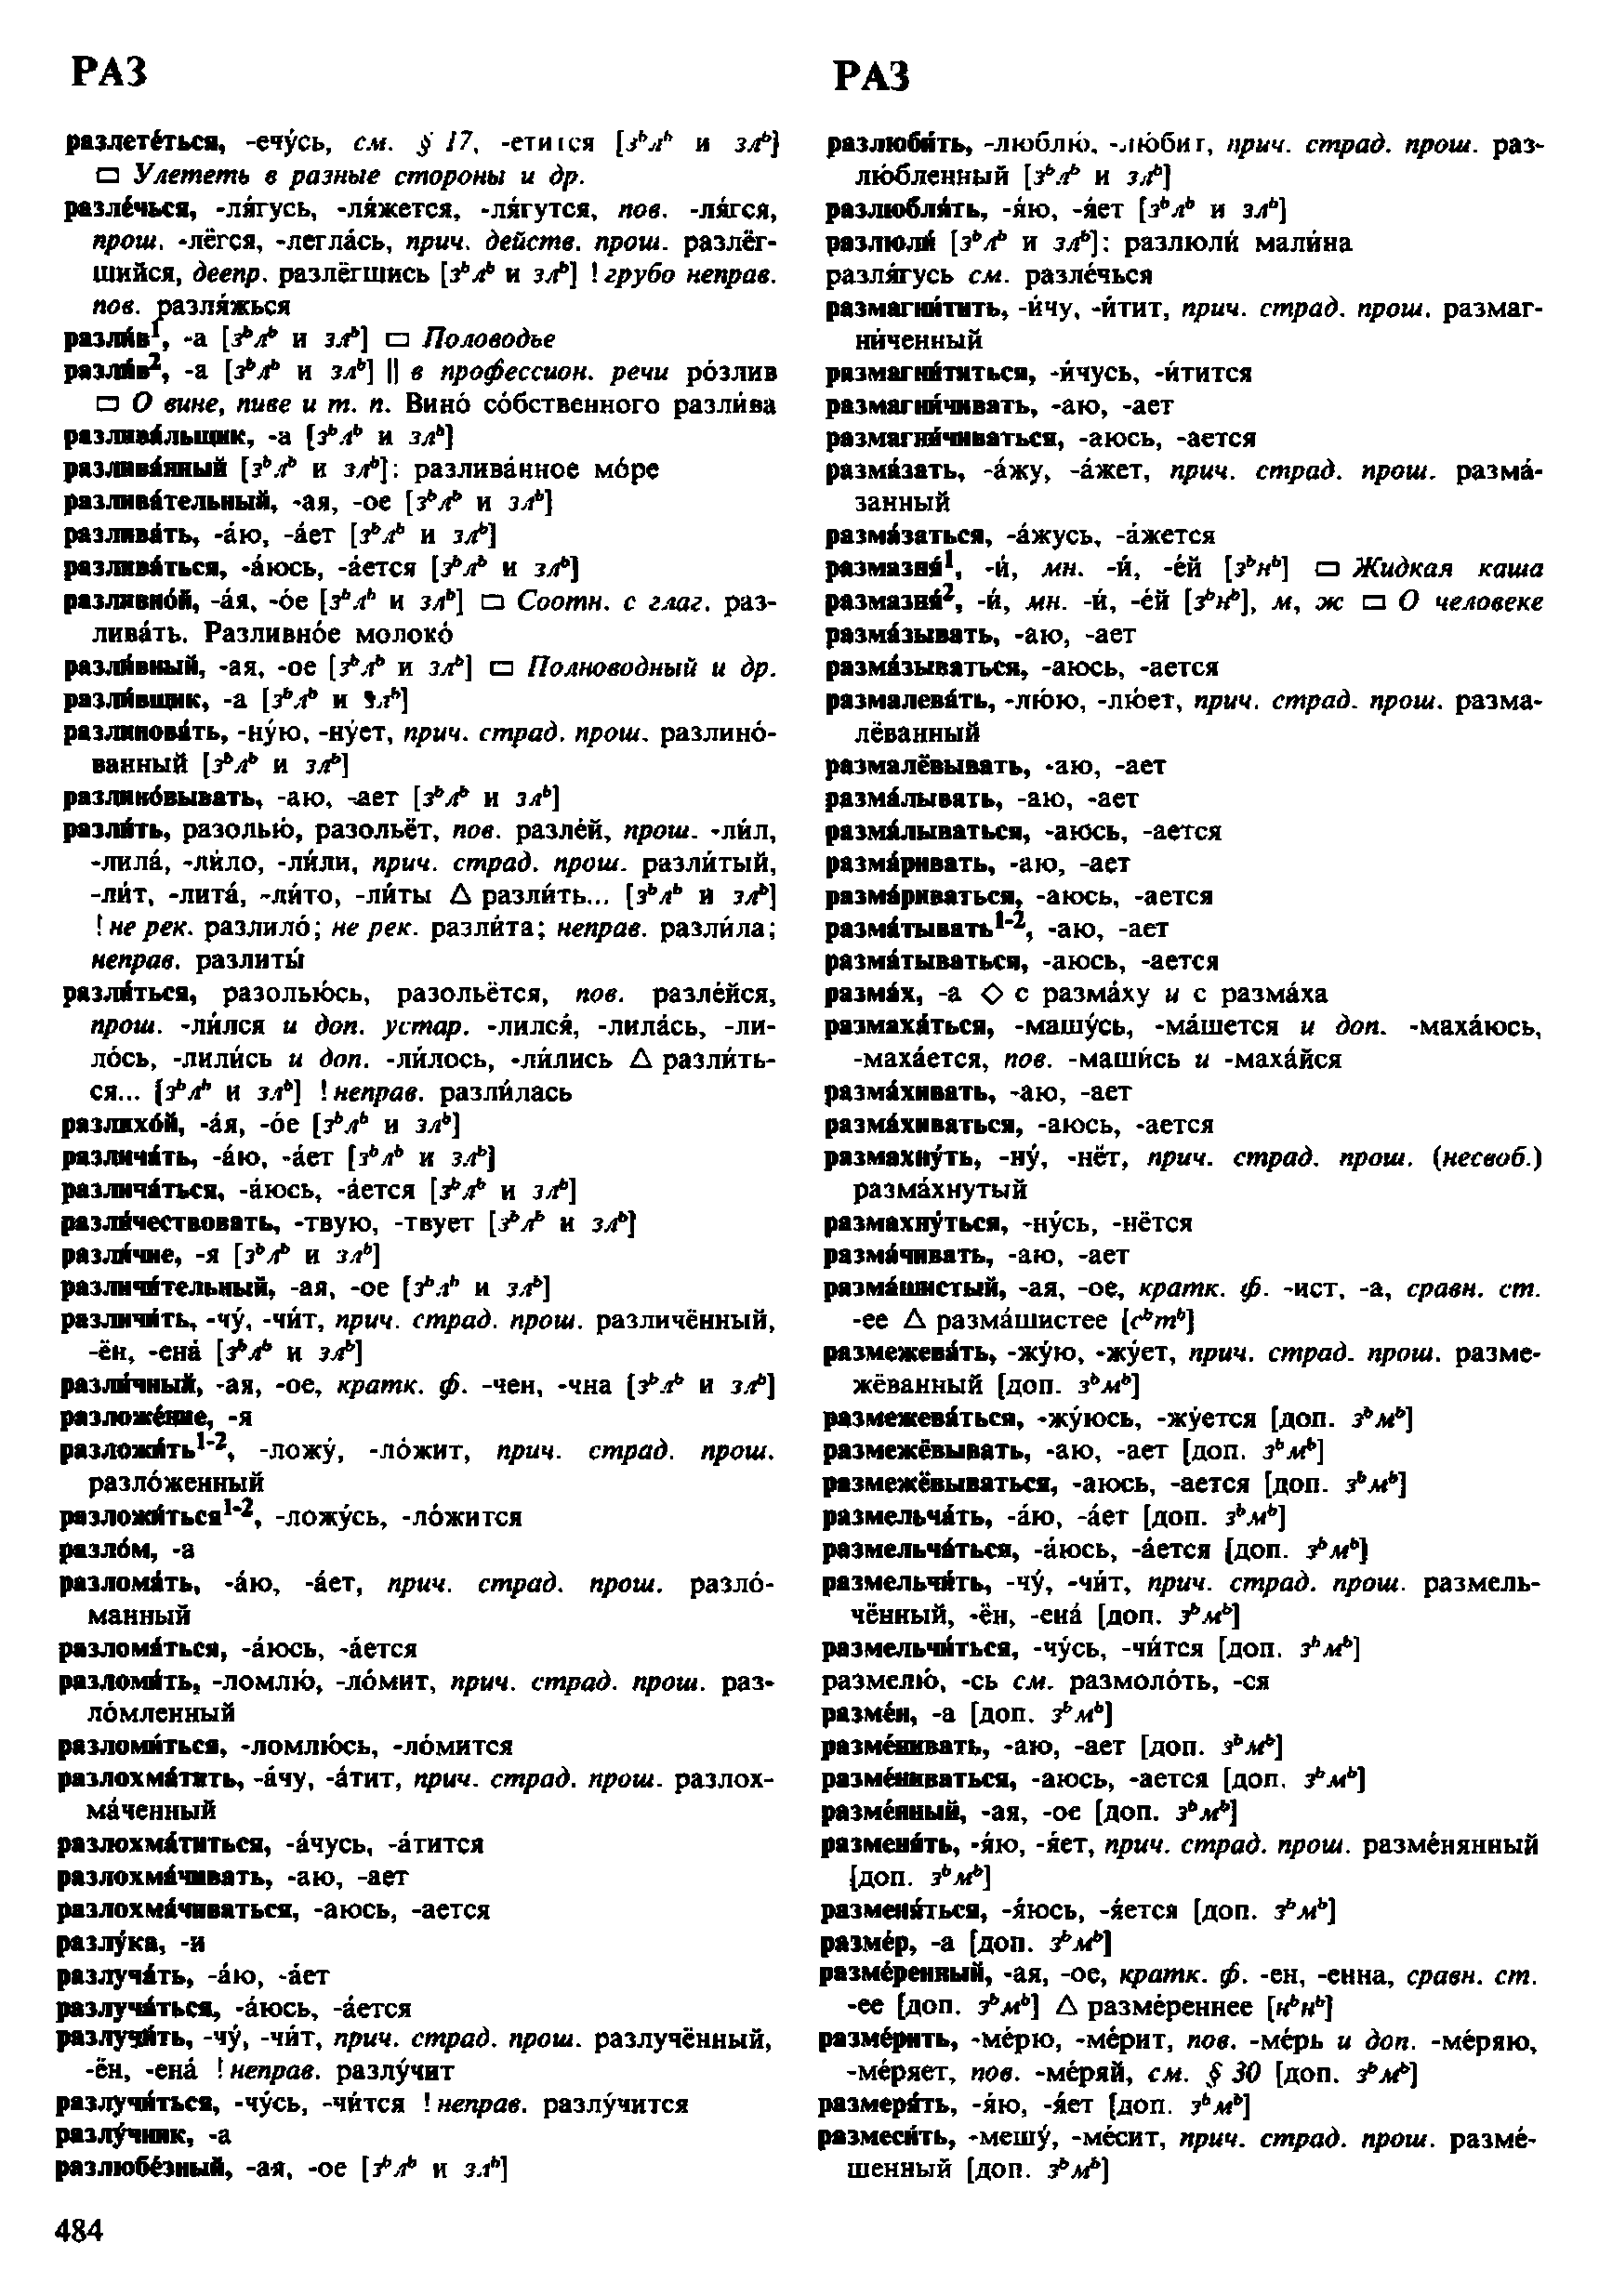 Фотокопия pdf / скан страницы 484 орфоэпического словаря под редакцией Аванесова (4 издание, 1988 год)